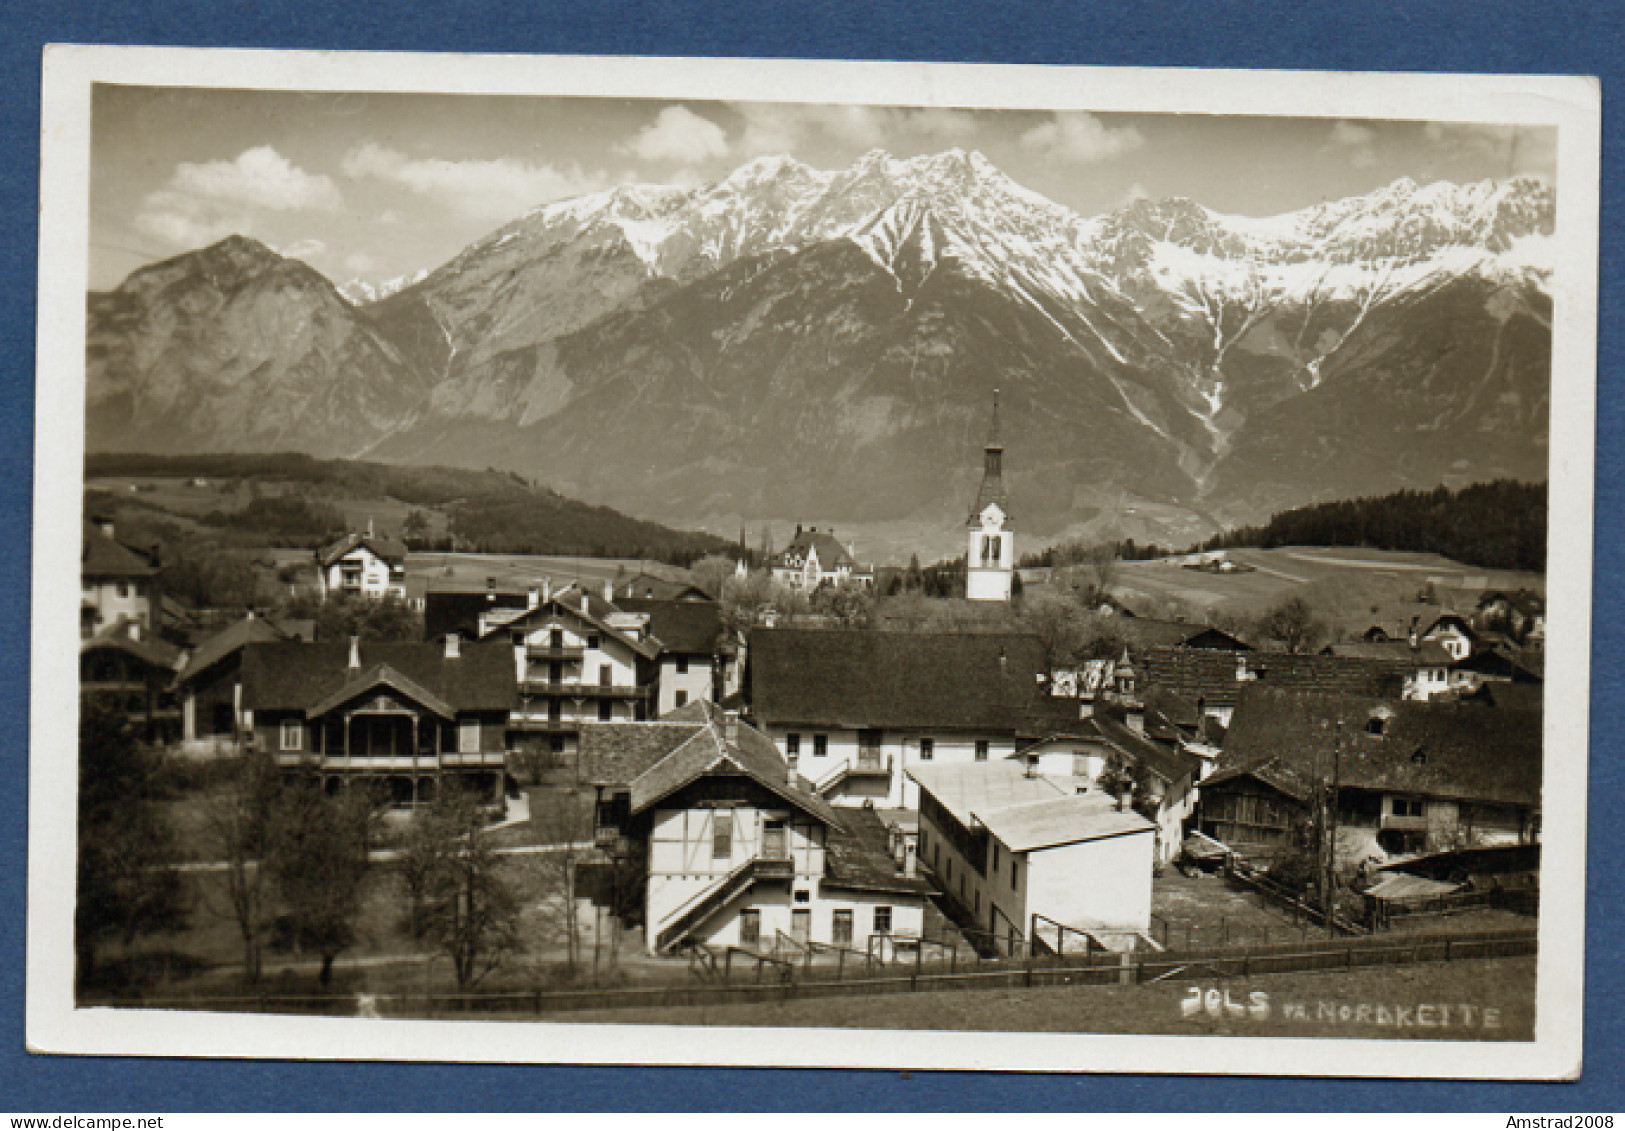 1935 - IGLS - TOROL - MIT NORDKETTE   - AUSTRIA - OSTERREICH - AUTRICHE - Igls